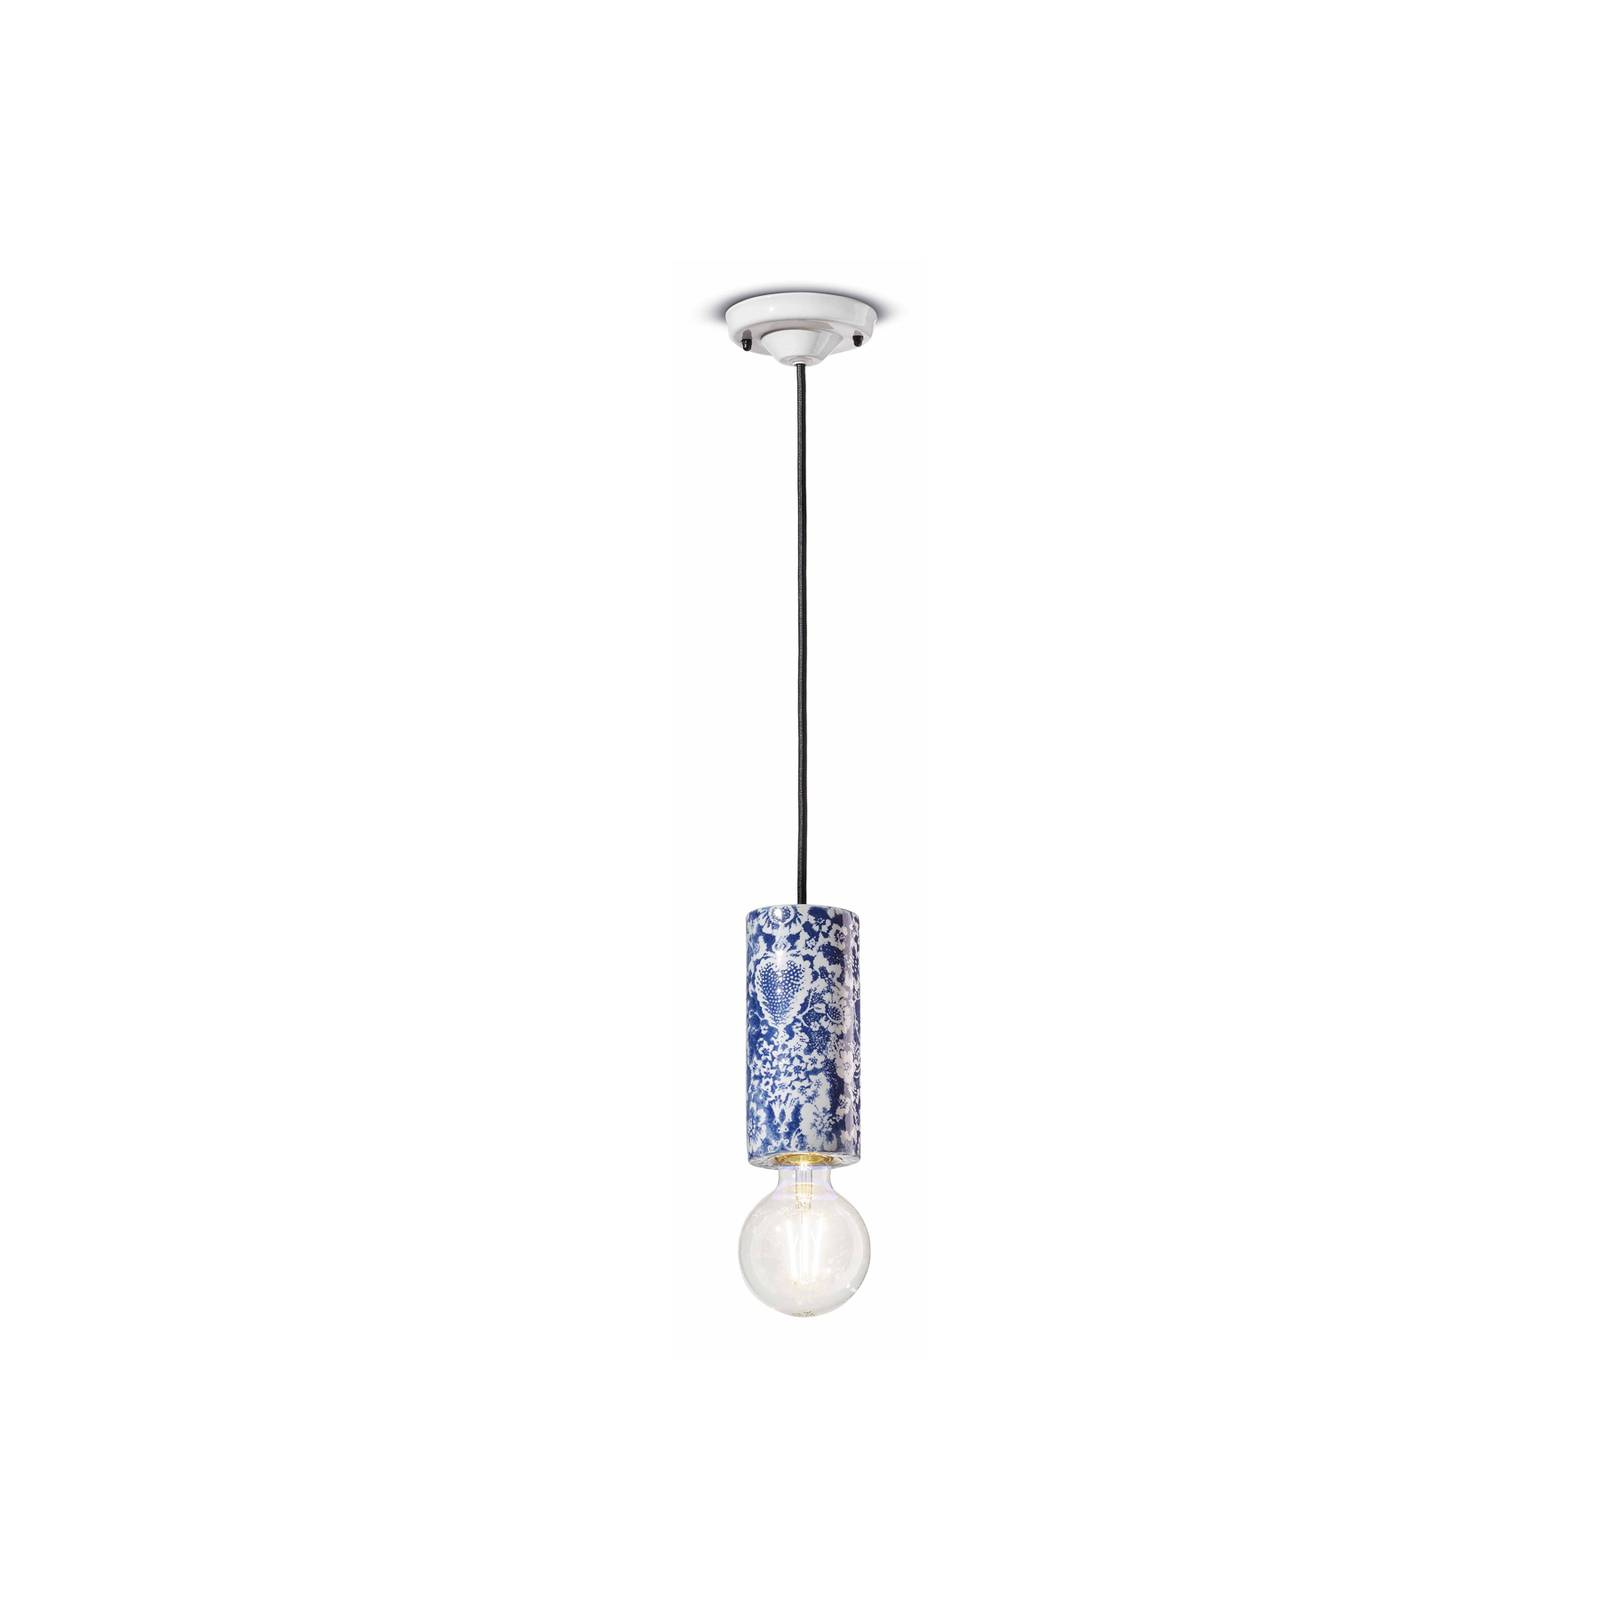 E-shop PI závesná lampa, kvetinový vzor Ø 8 cm modrá/biela